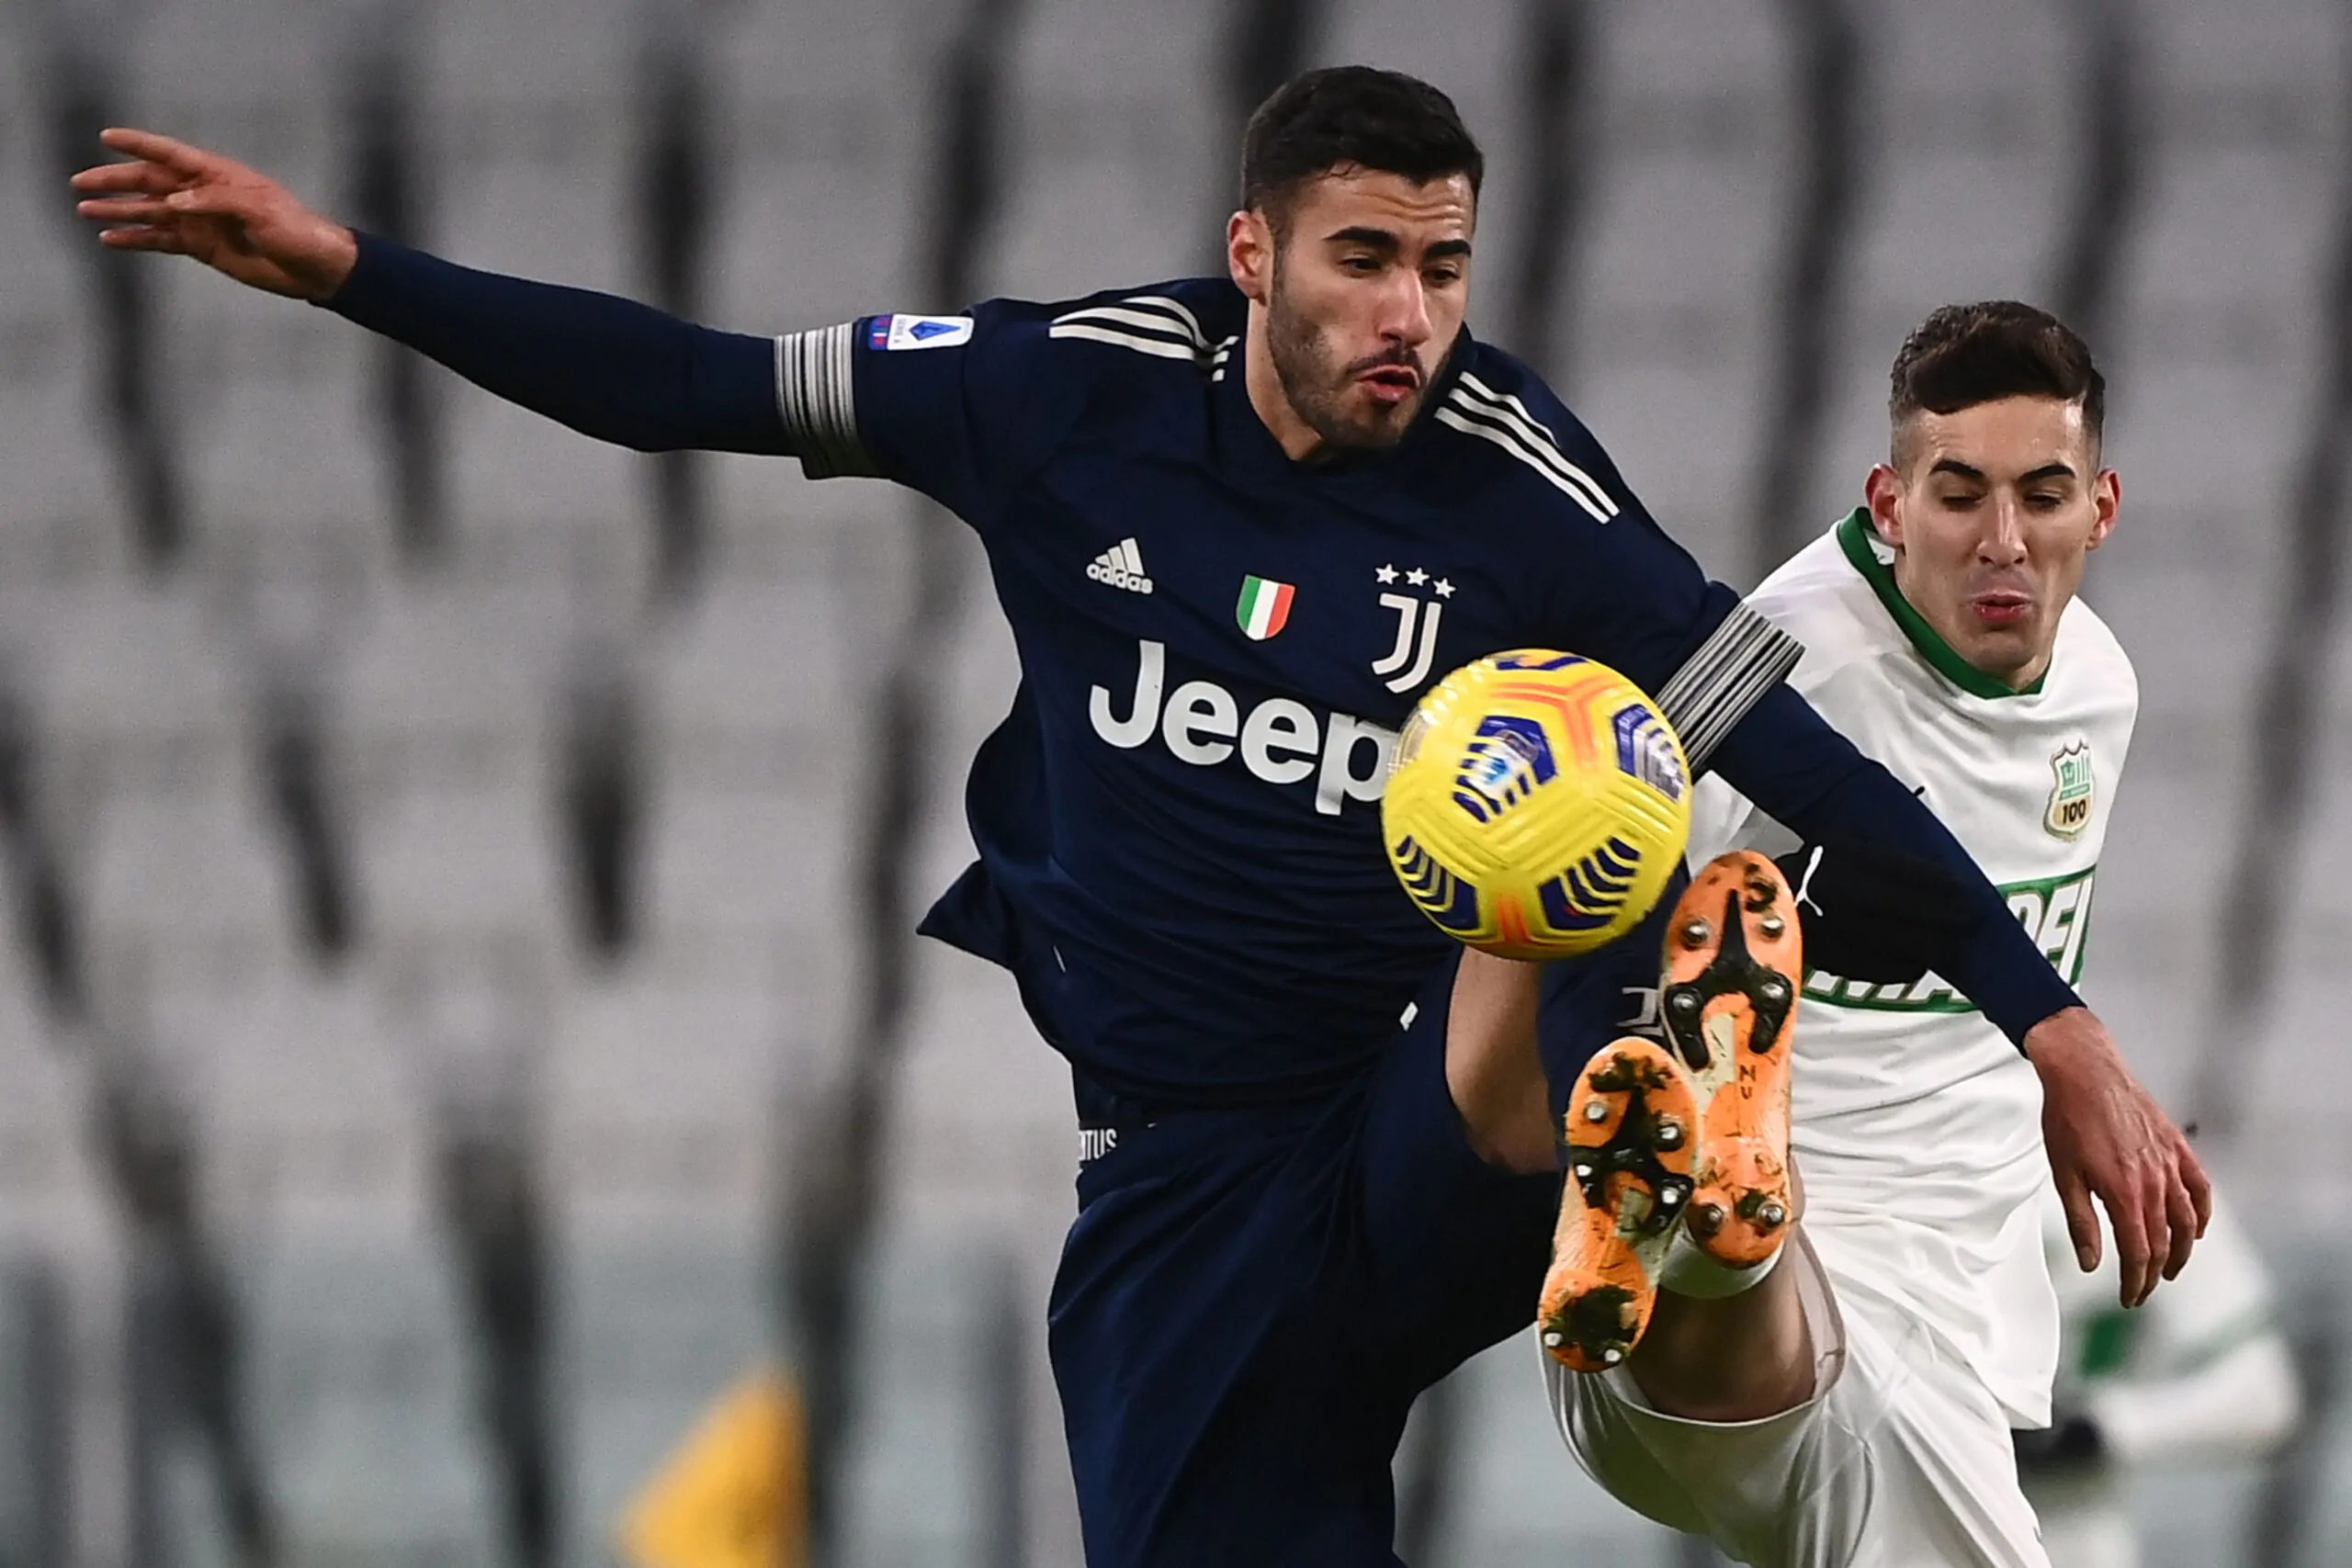 Accordo trovato, Frabotta lascia la Juventus: giocherà in Serie A